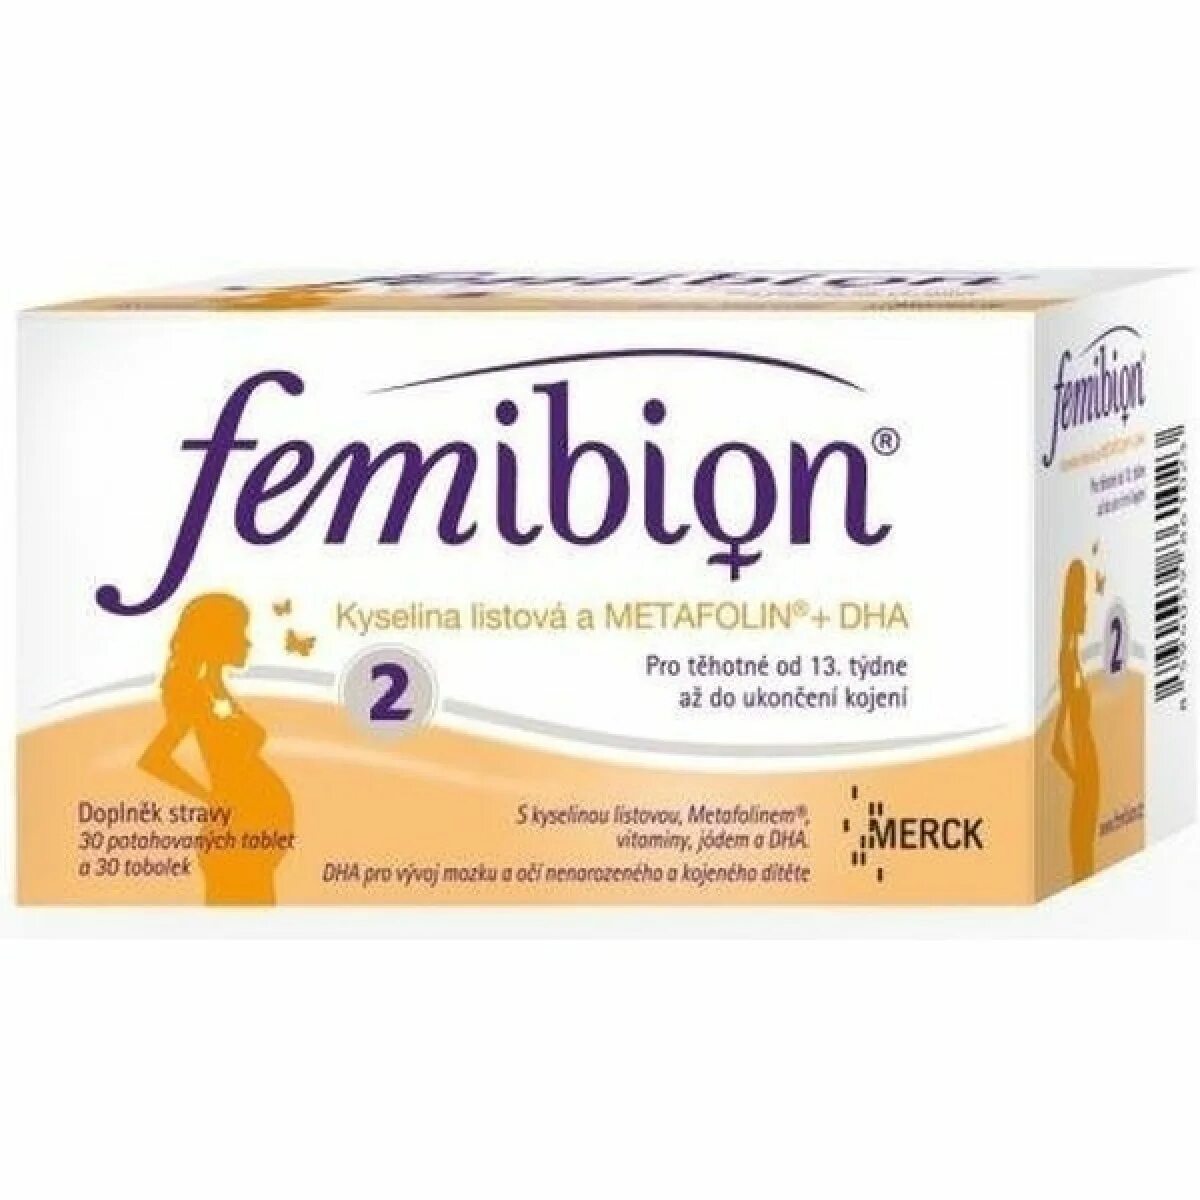 Как пить фемибион 2. Femibion 2. Фемибион 2 и 3. Фемибион2/10. Фемибион 2 Реддис.